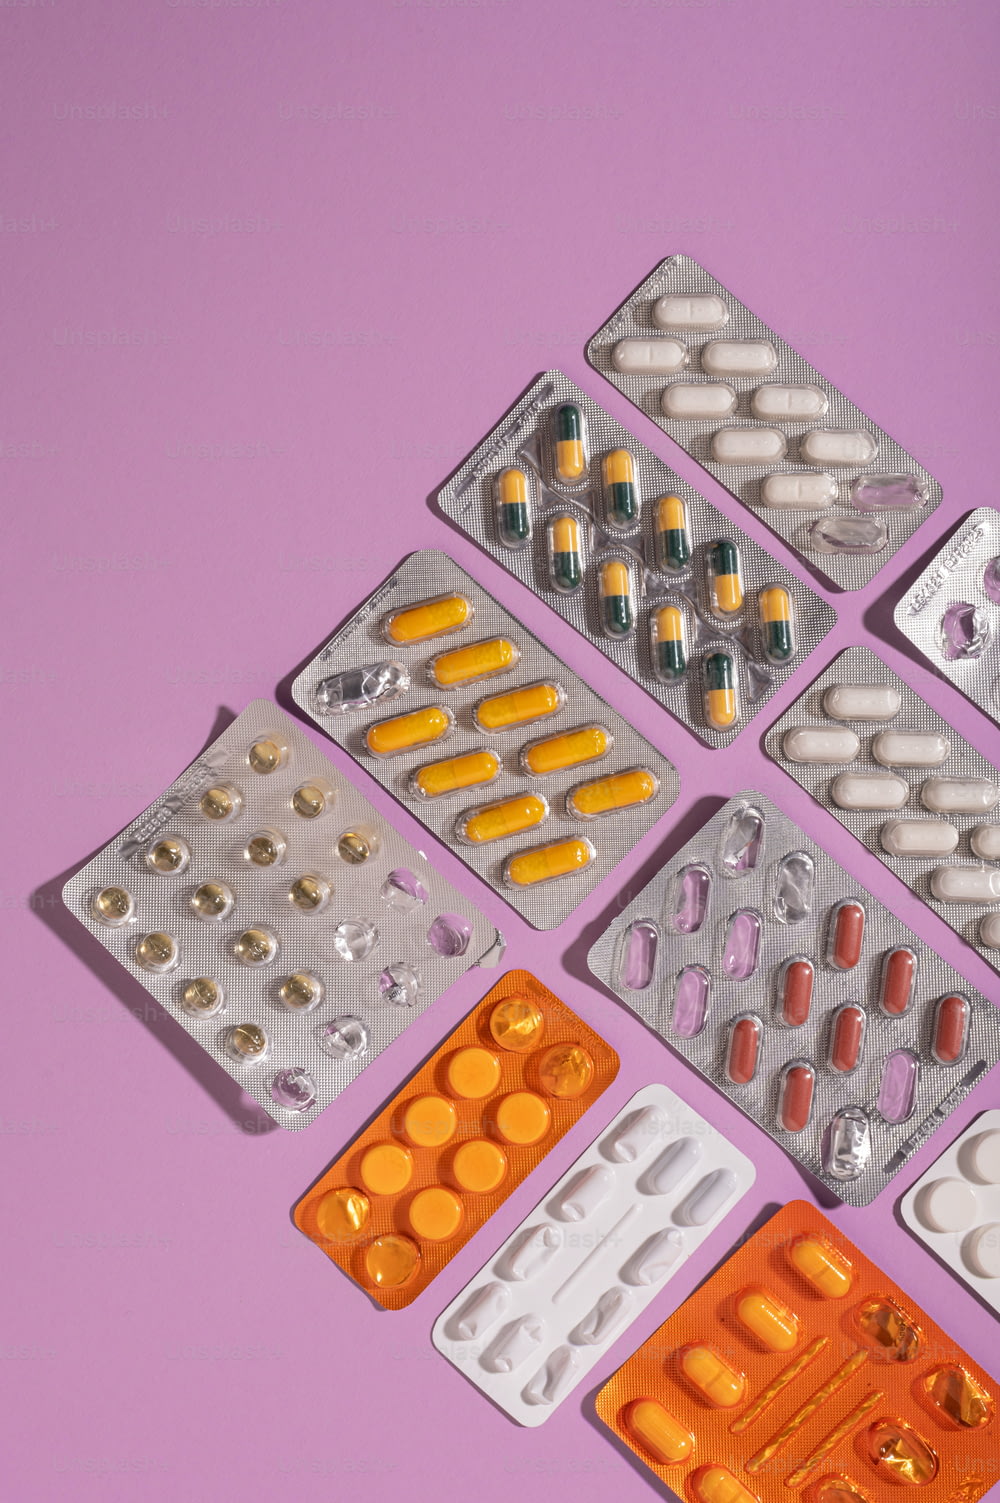 Eine Gruppe von Pillen und Tabletten auf violettem Hintergrund